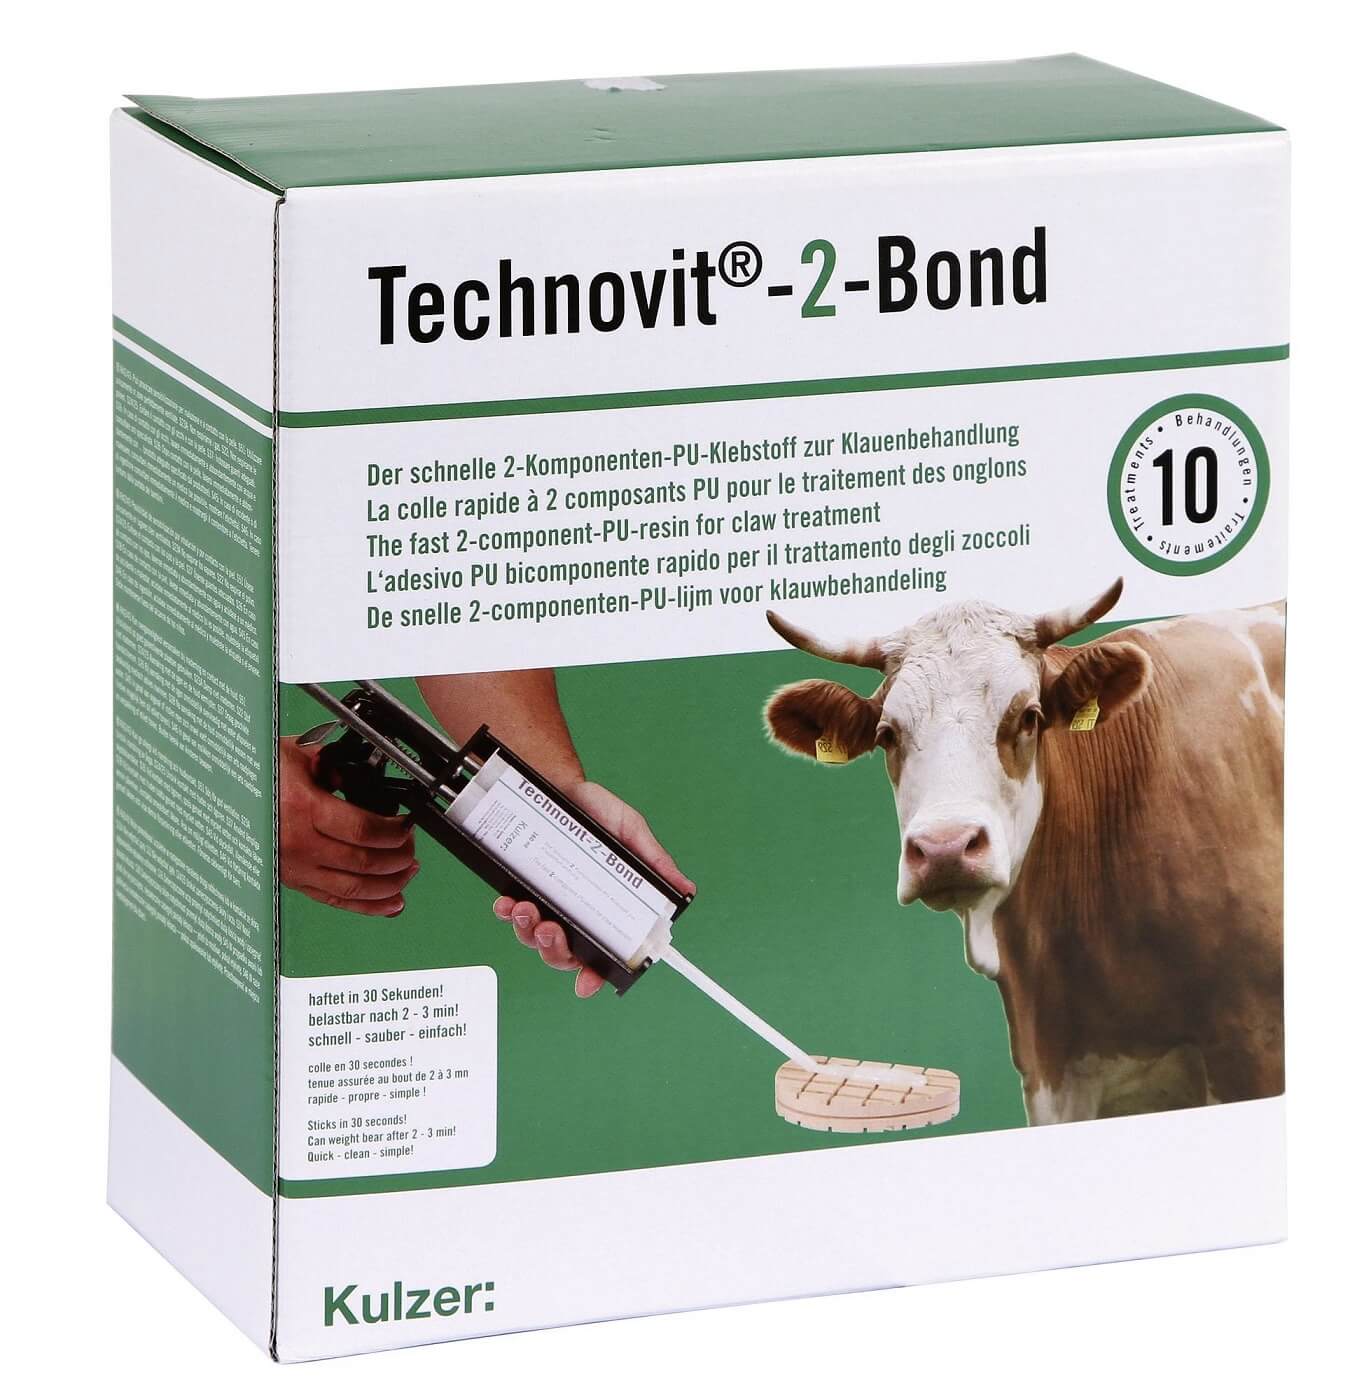 Technovit-2-Bond Starterset für 10 Anwendungen